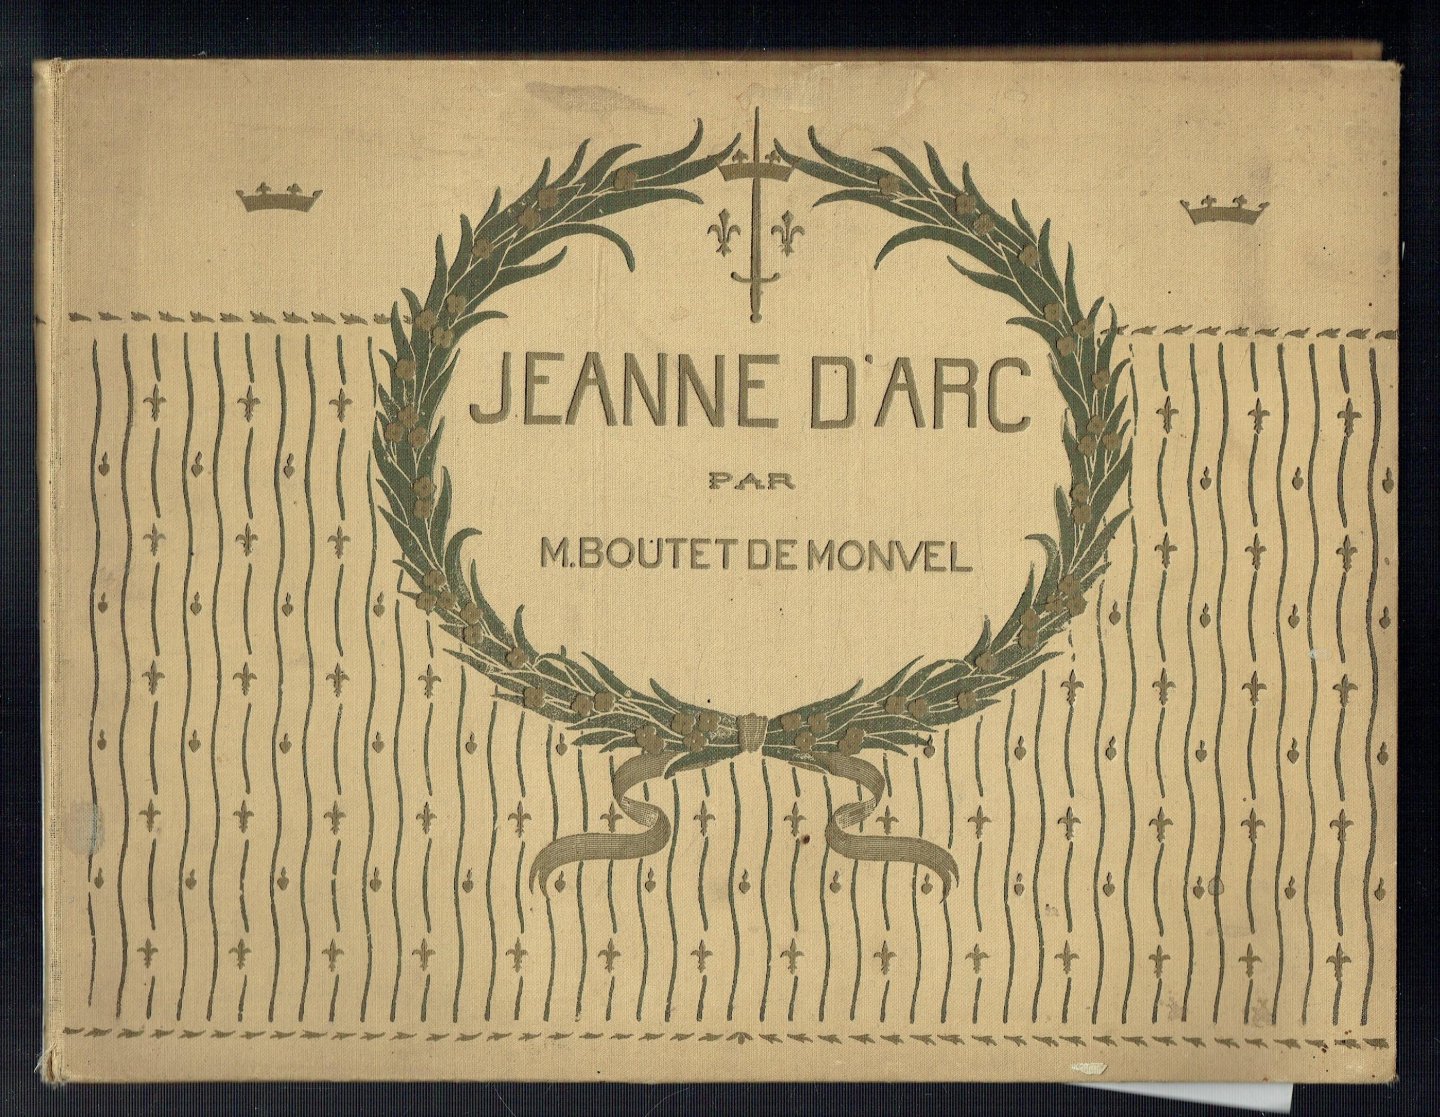 Boutet de Monvel, M - Jeanne d'Arc